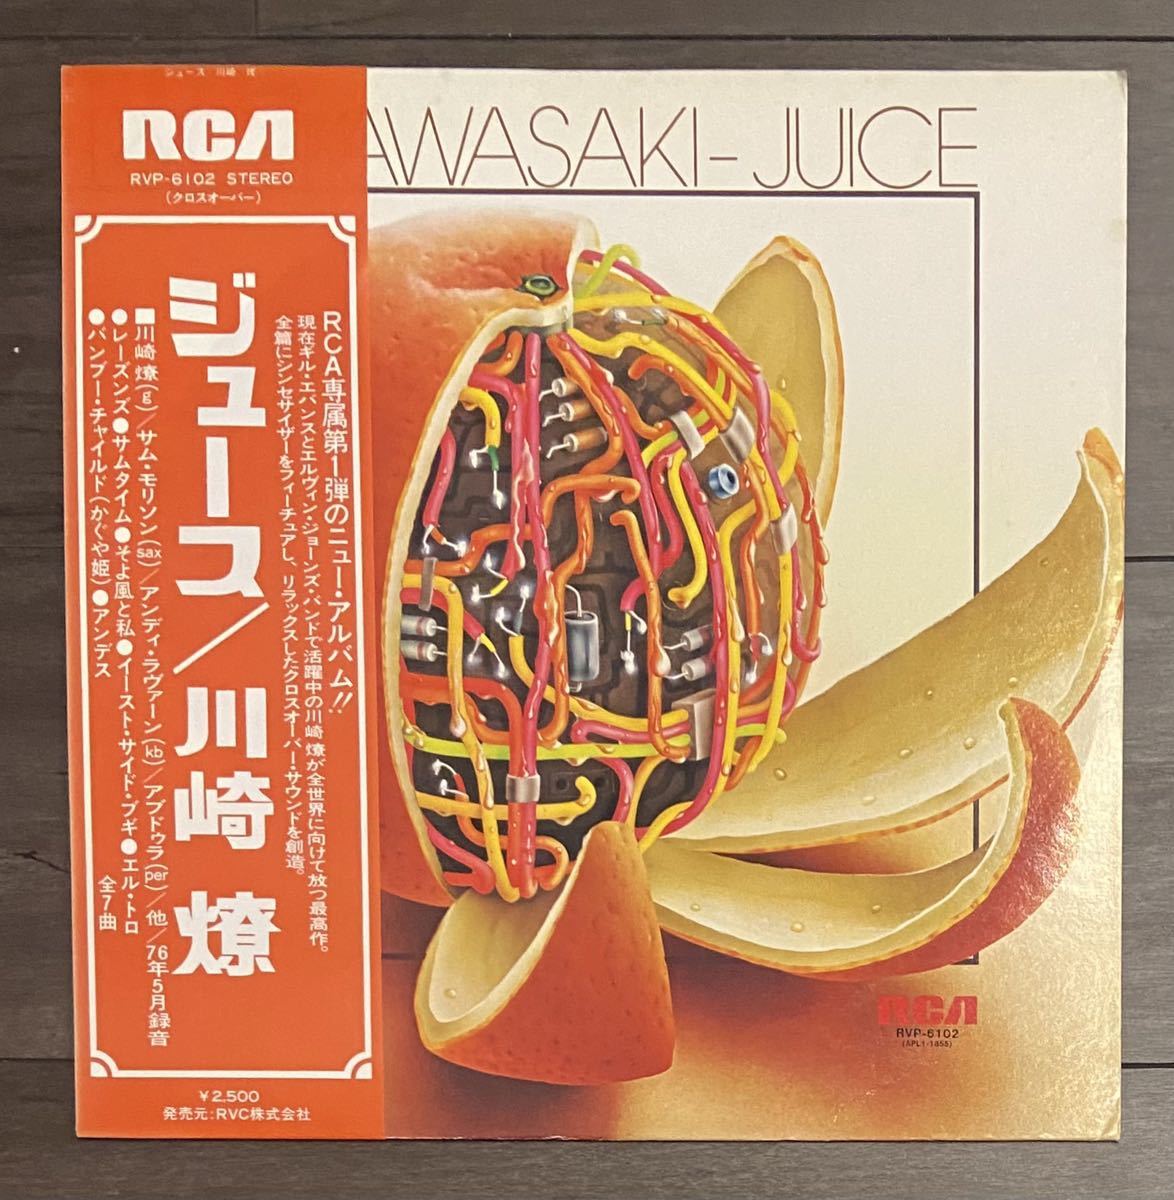 和ジャズ 希少盤 川崎燎 / JUICE 1976年発売 オリジナル盤 RCA RVP